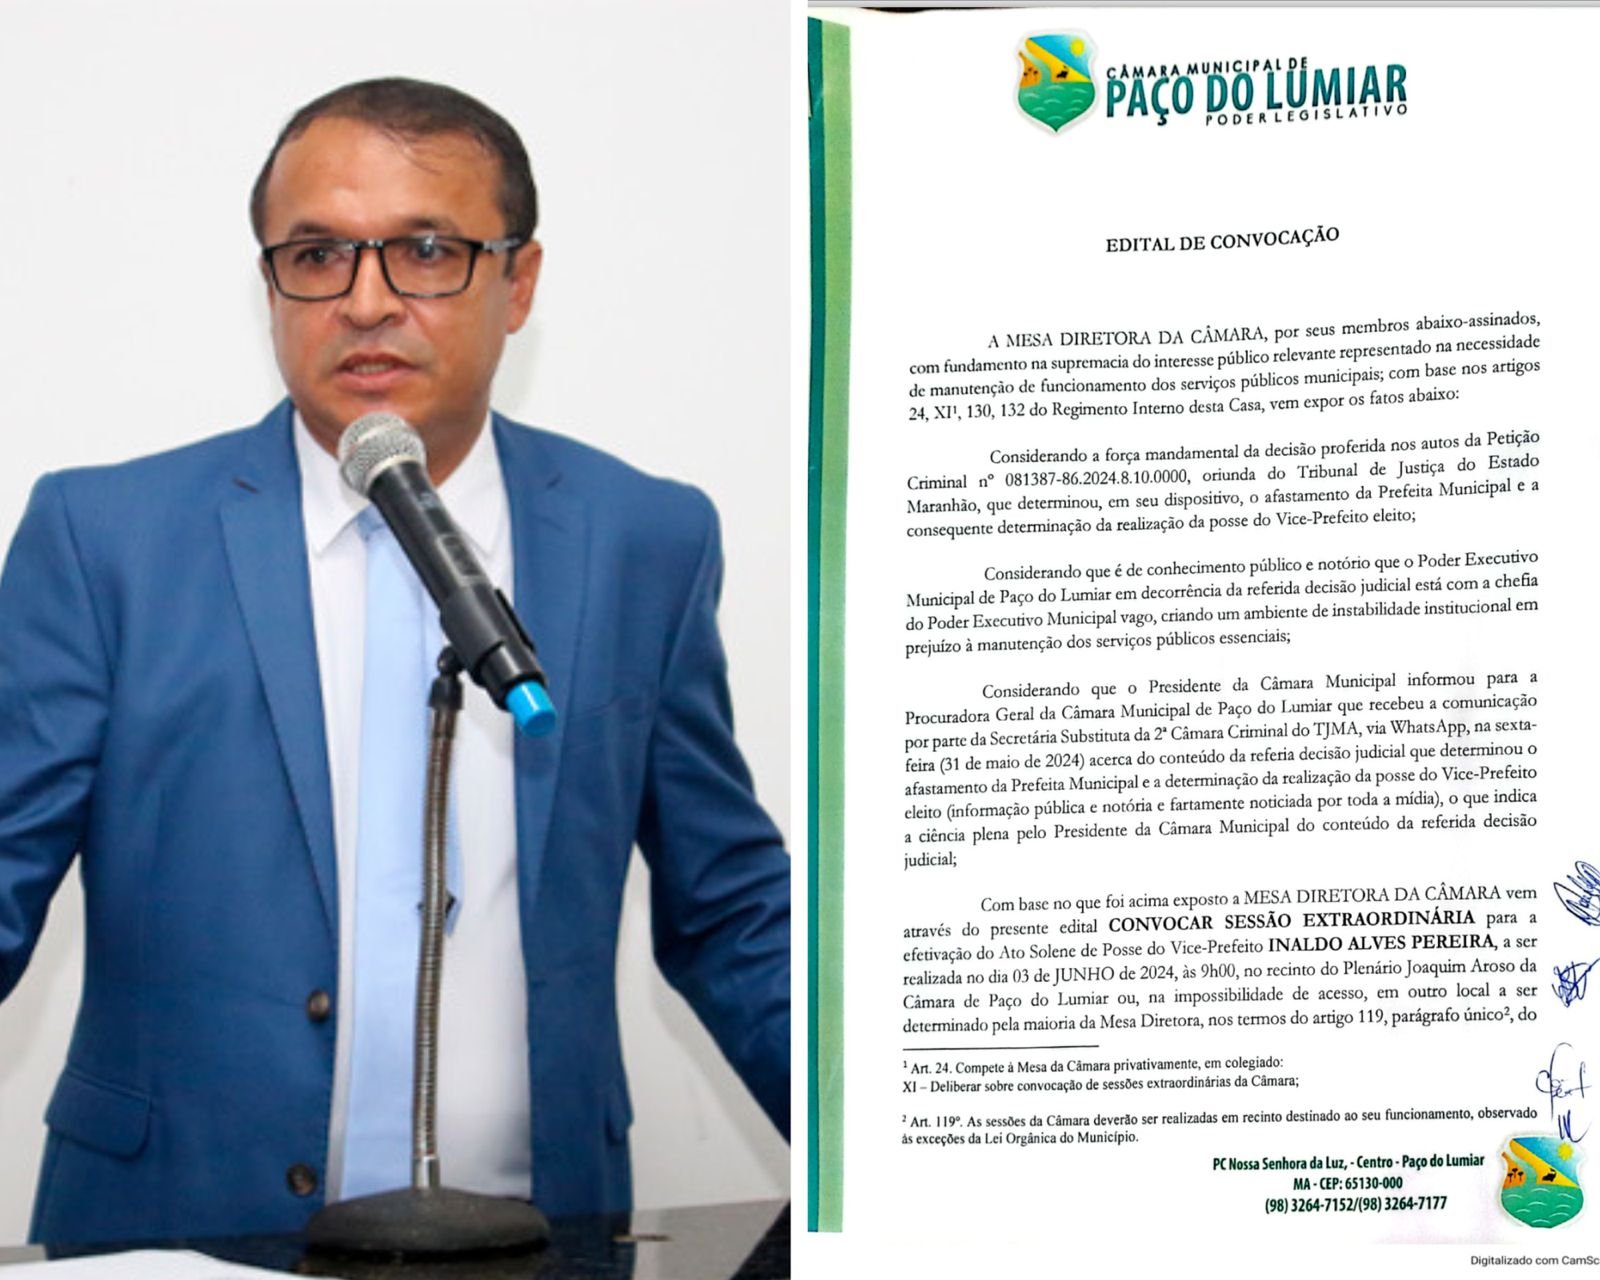 Urgente: Câmara convoca vereadores e vice para posse após afastamento de Paula da Pindoba por corrupção <br>